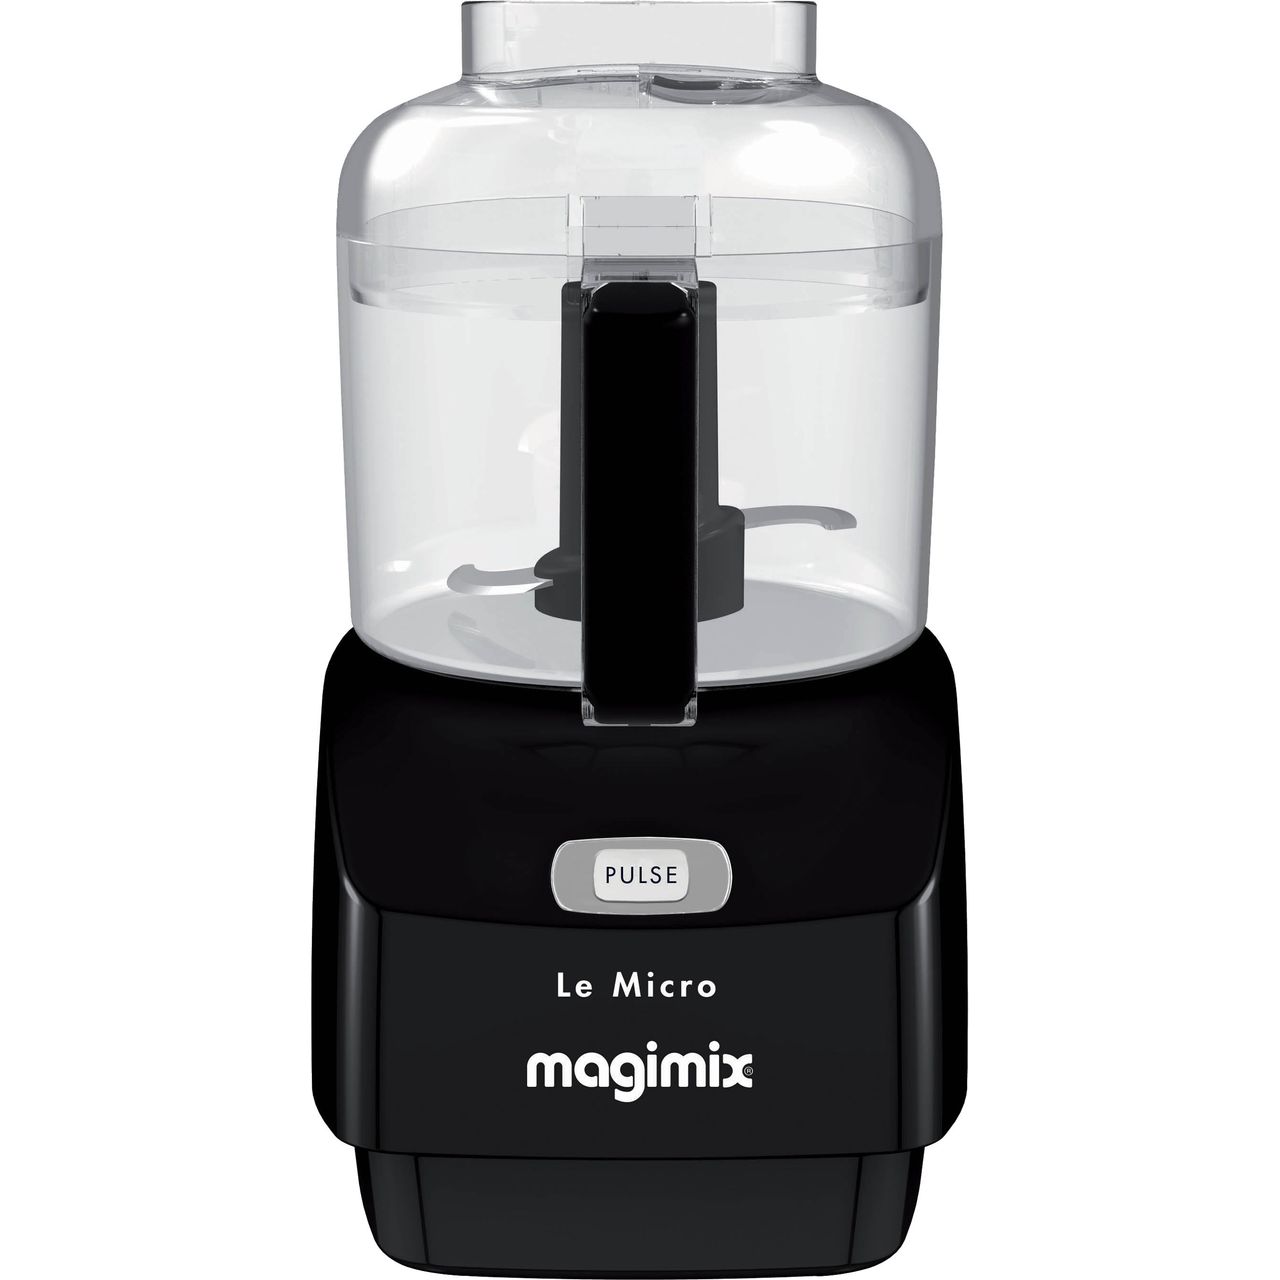 Magimix Le Micro 18113 290 Watt Mini Food Processor Review